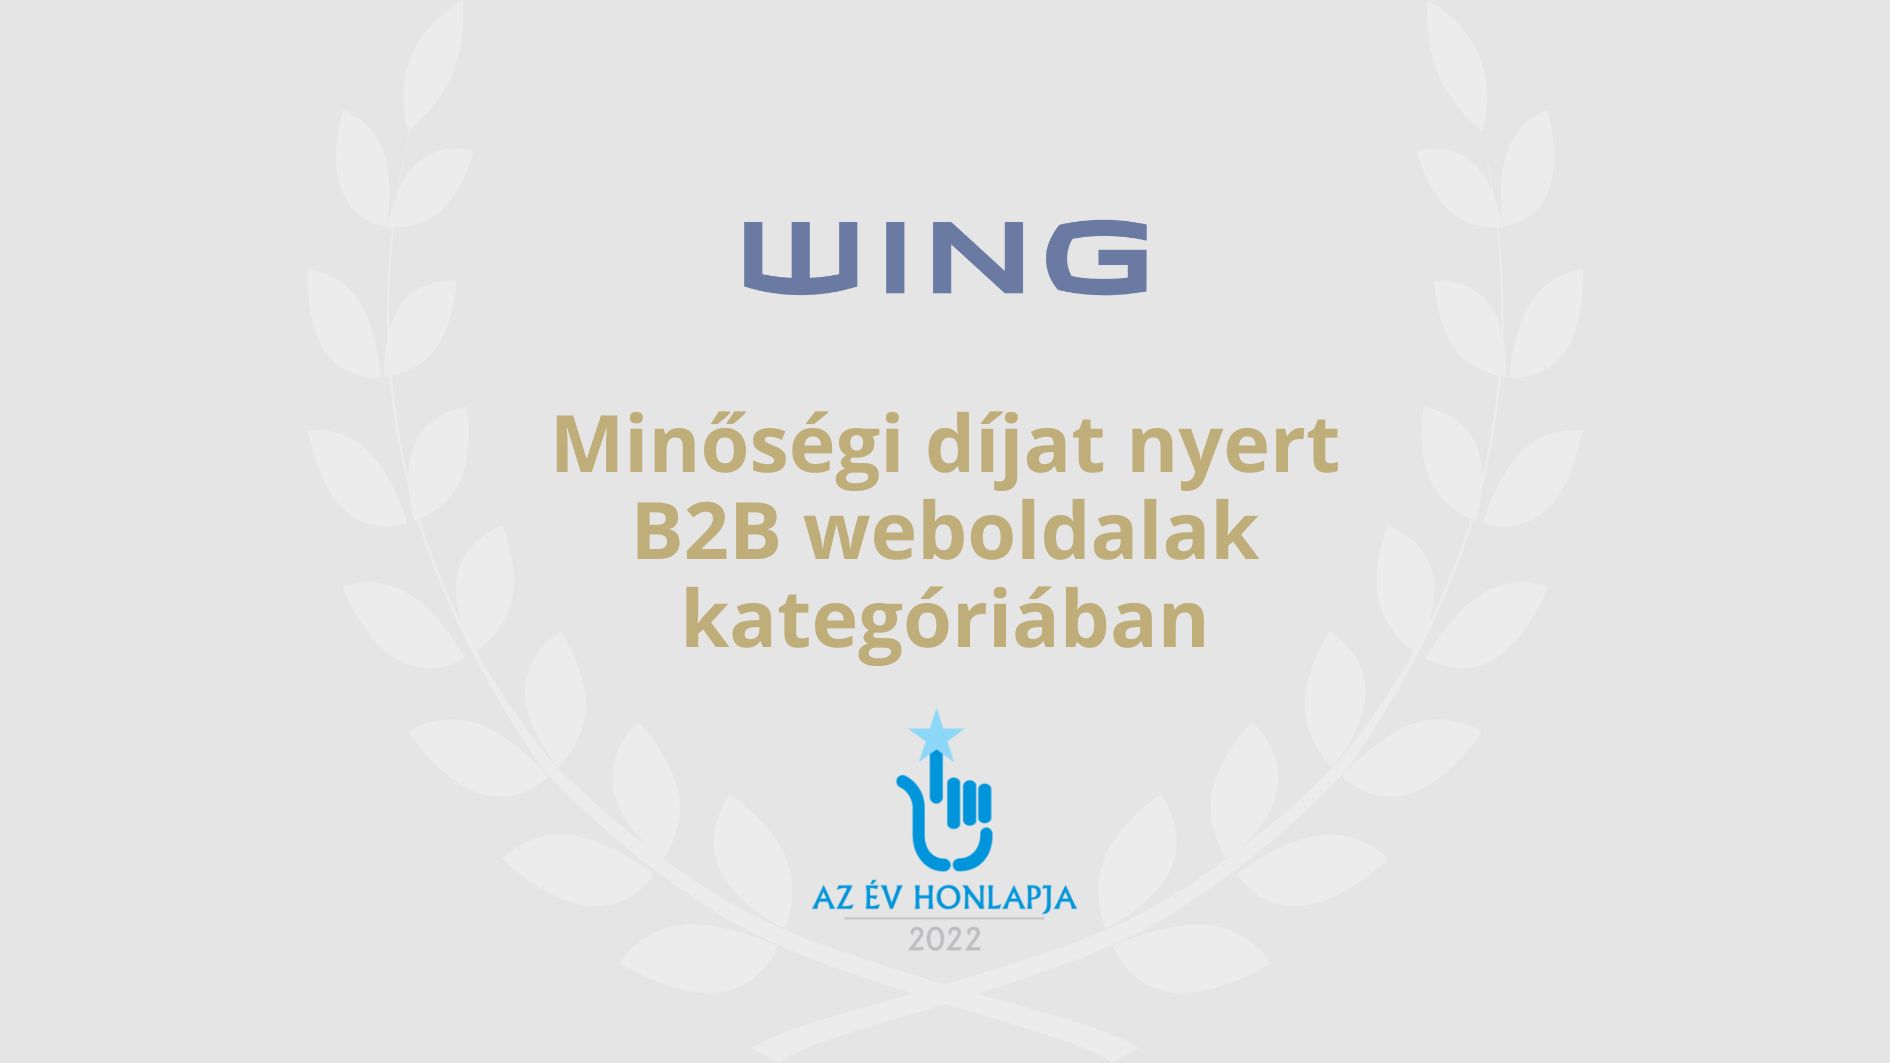 A WING az Év Honlapja Pályázaton Minőségi díjat nyert B2B kategóriában